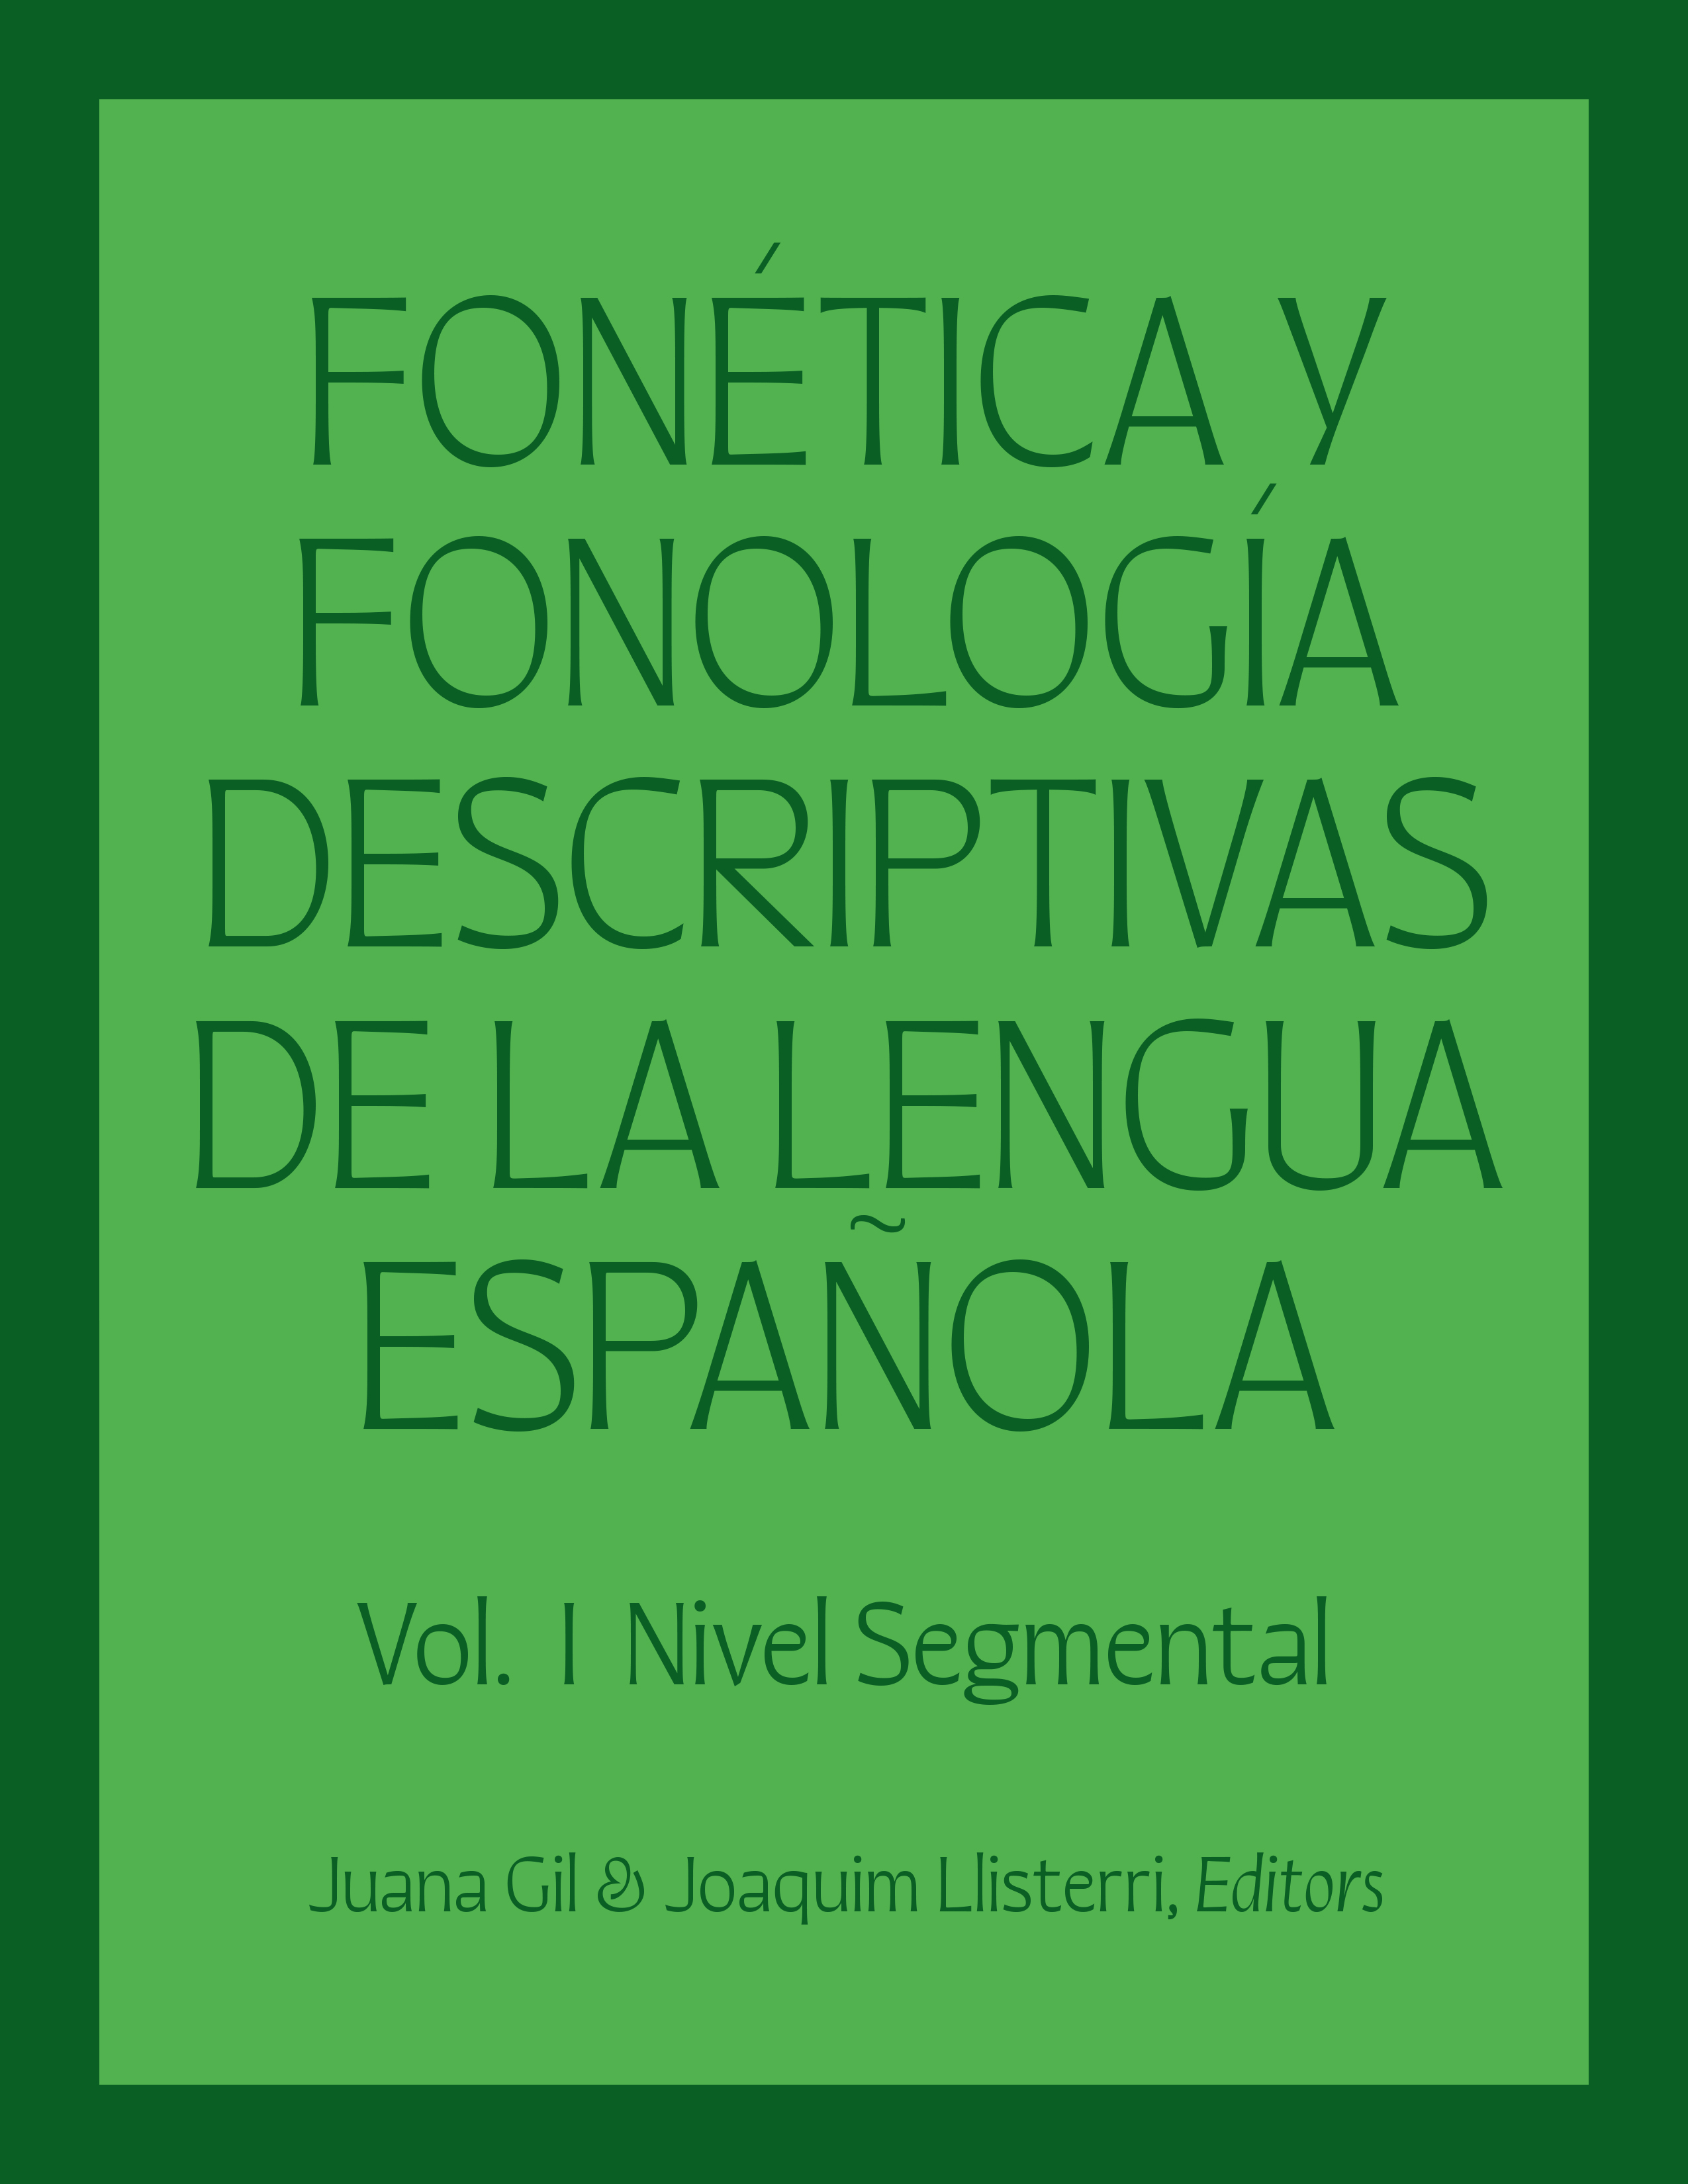 Fonética y Fonología Descriptivas de la Lengua Española. Vol. 1 (libro)